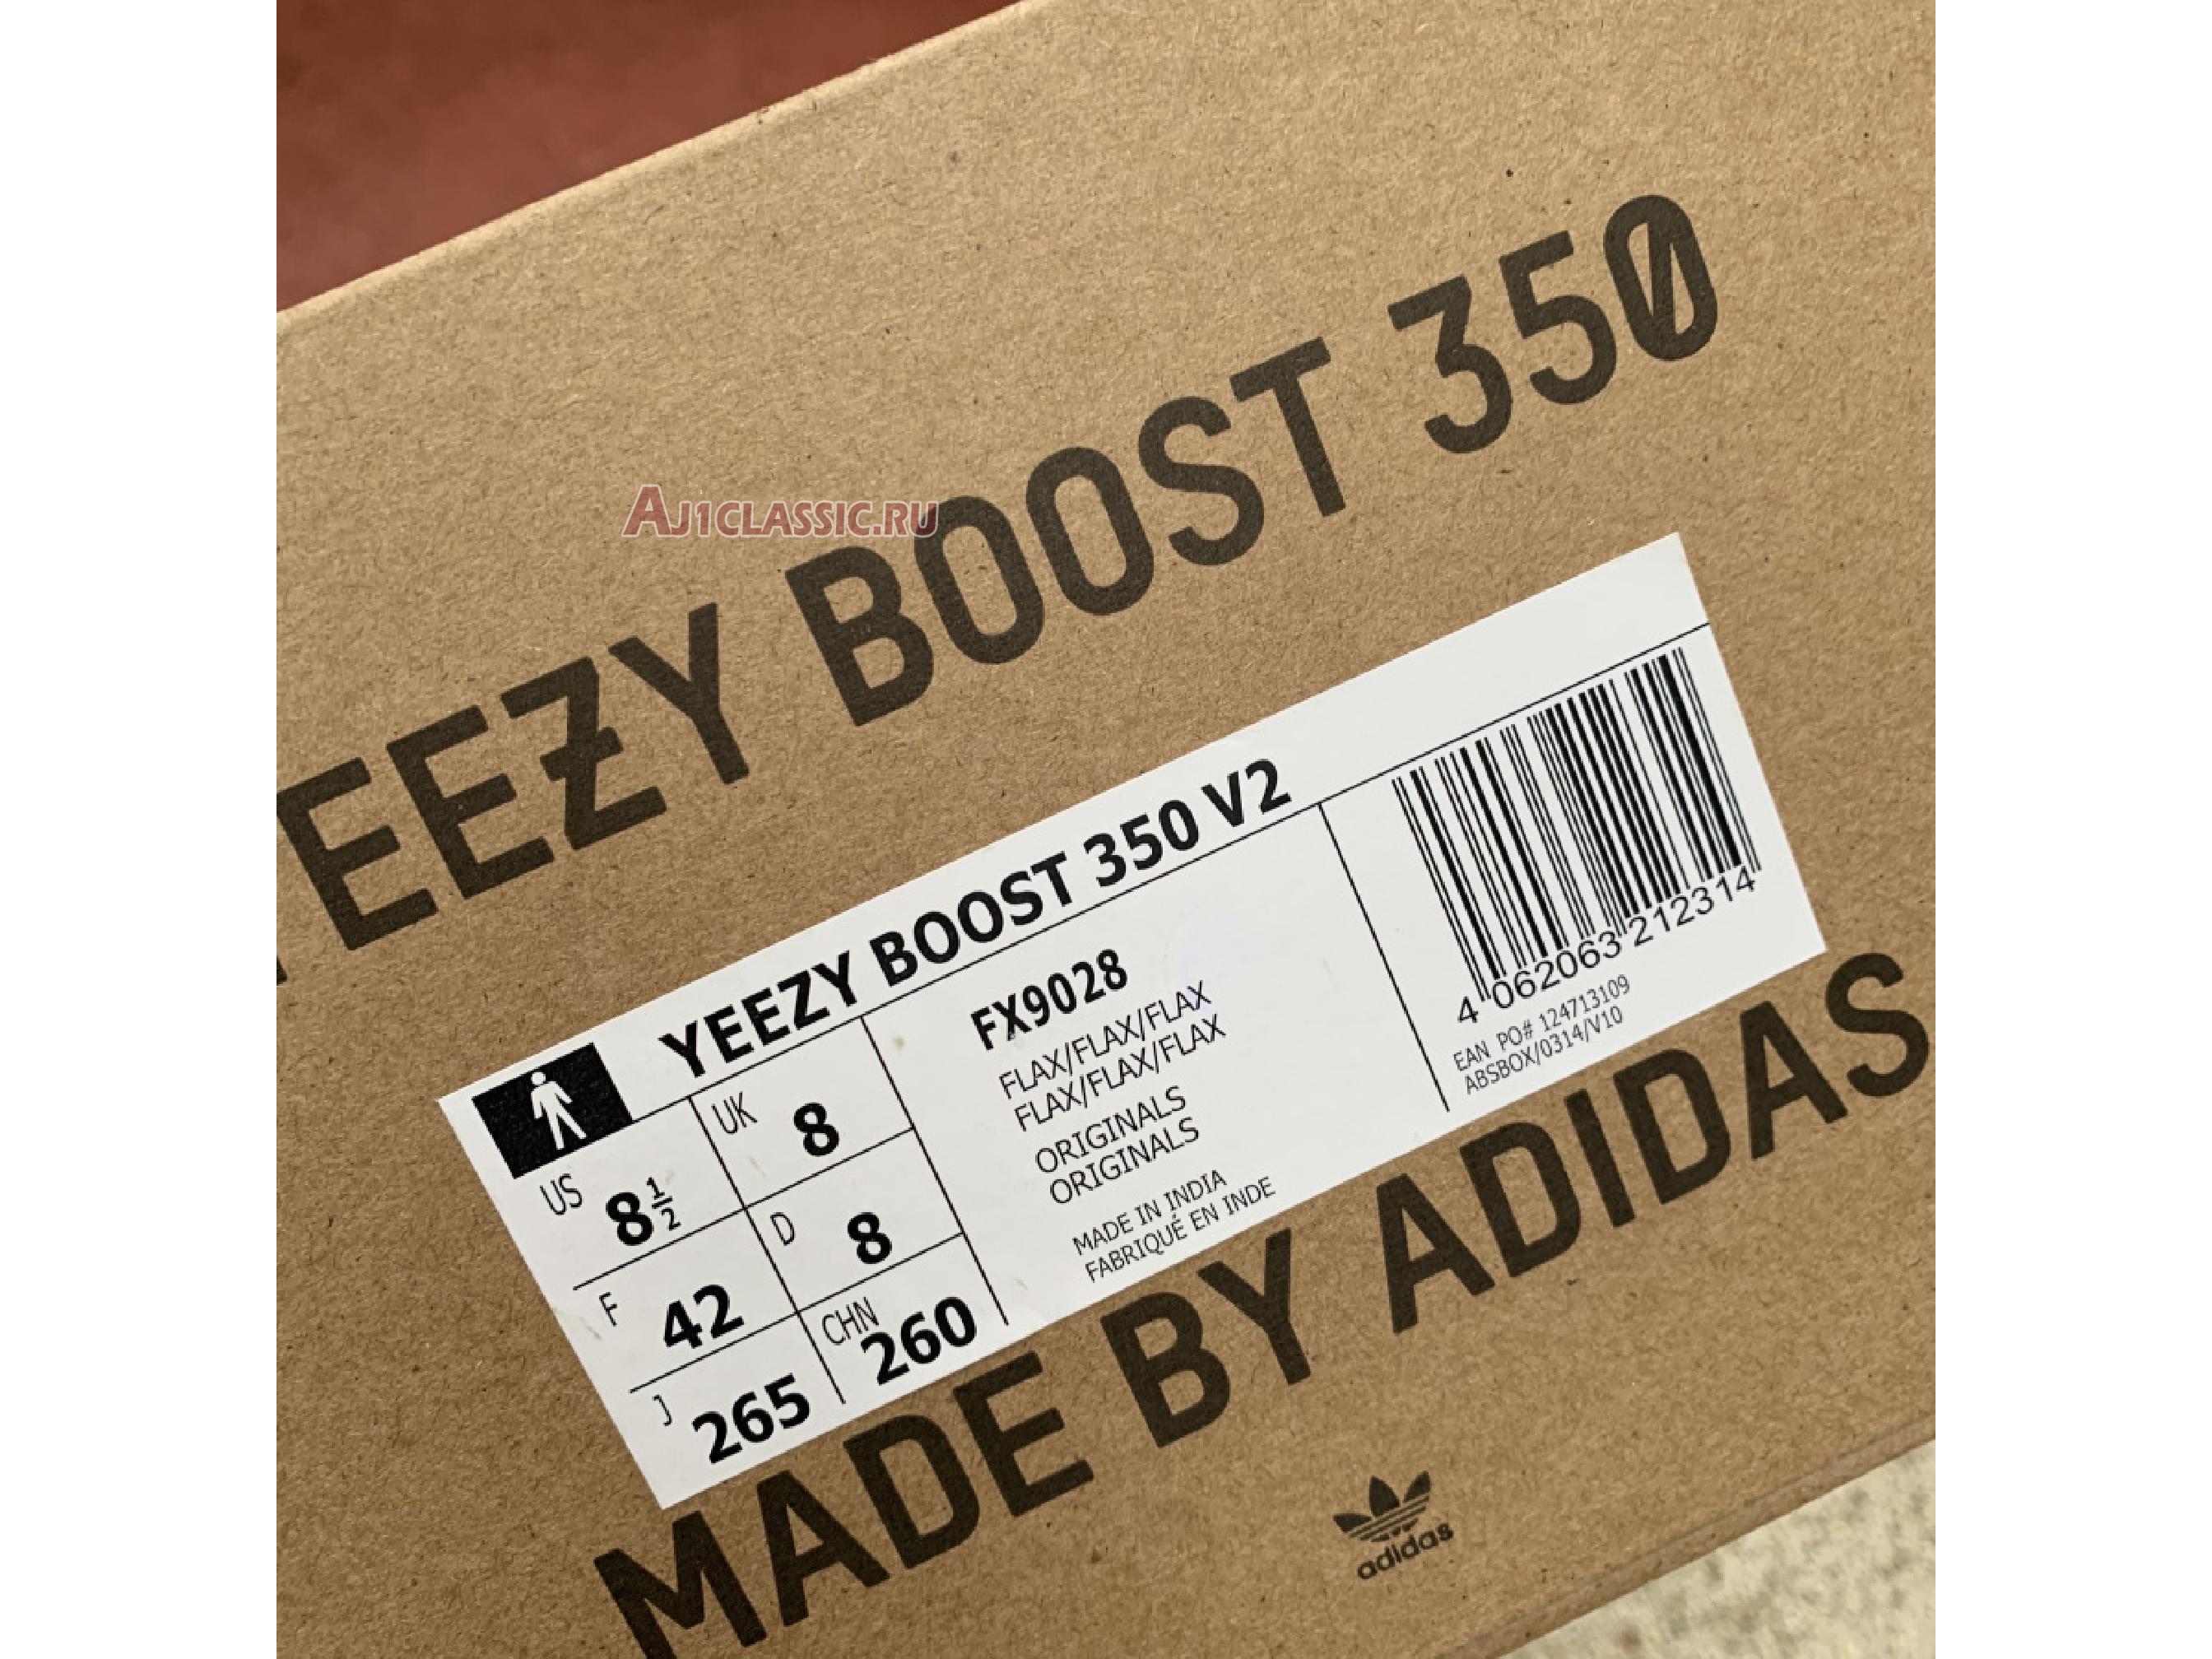 Adidas Yeezy Boost 350 V2 "Flax" FX9028